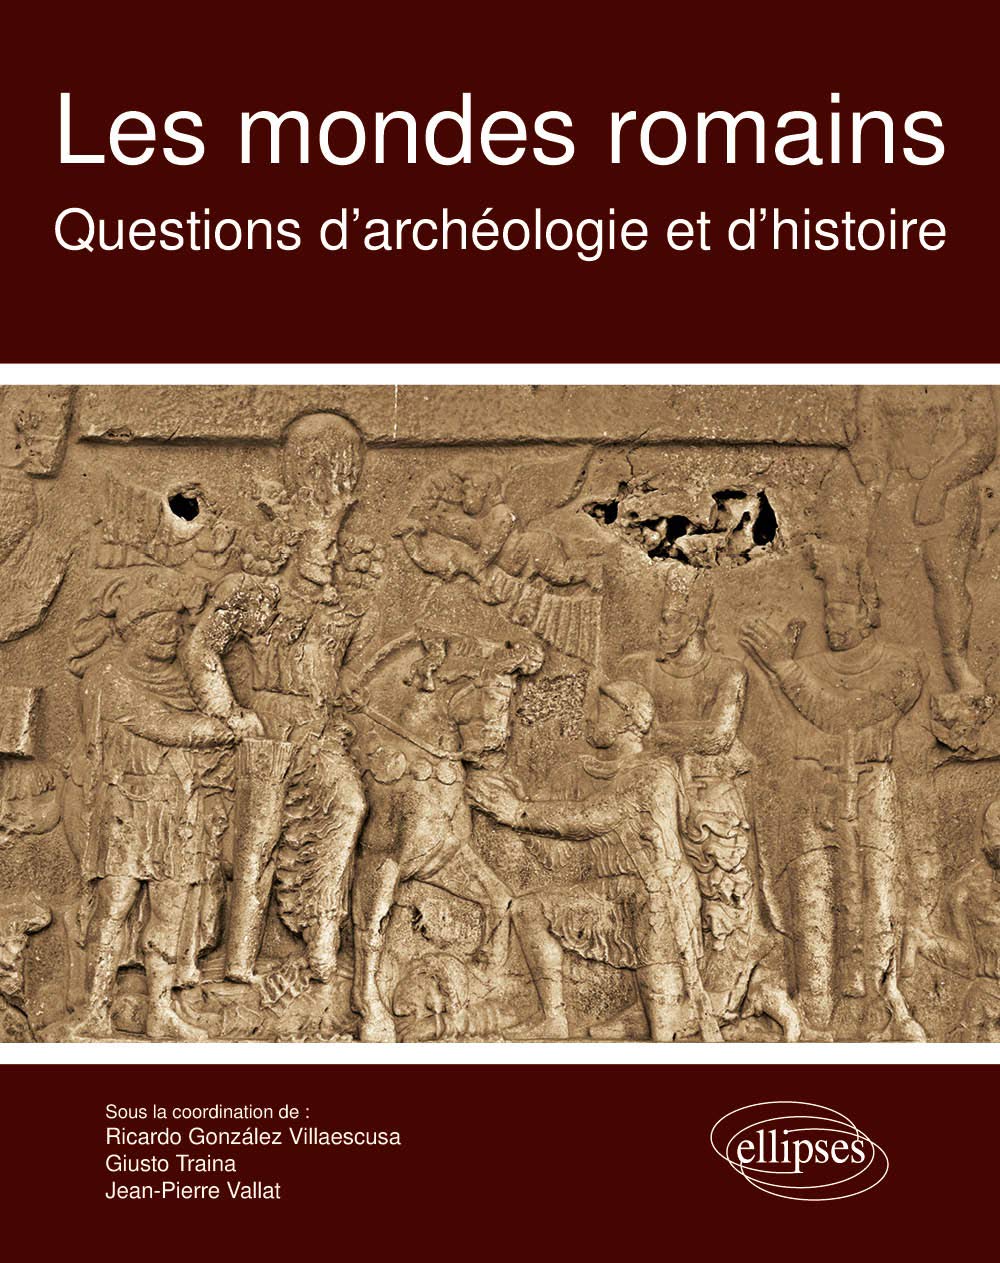 Les mondes romains. Questions d'archéologie et d'histoire, 2020, 468 p.